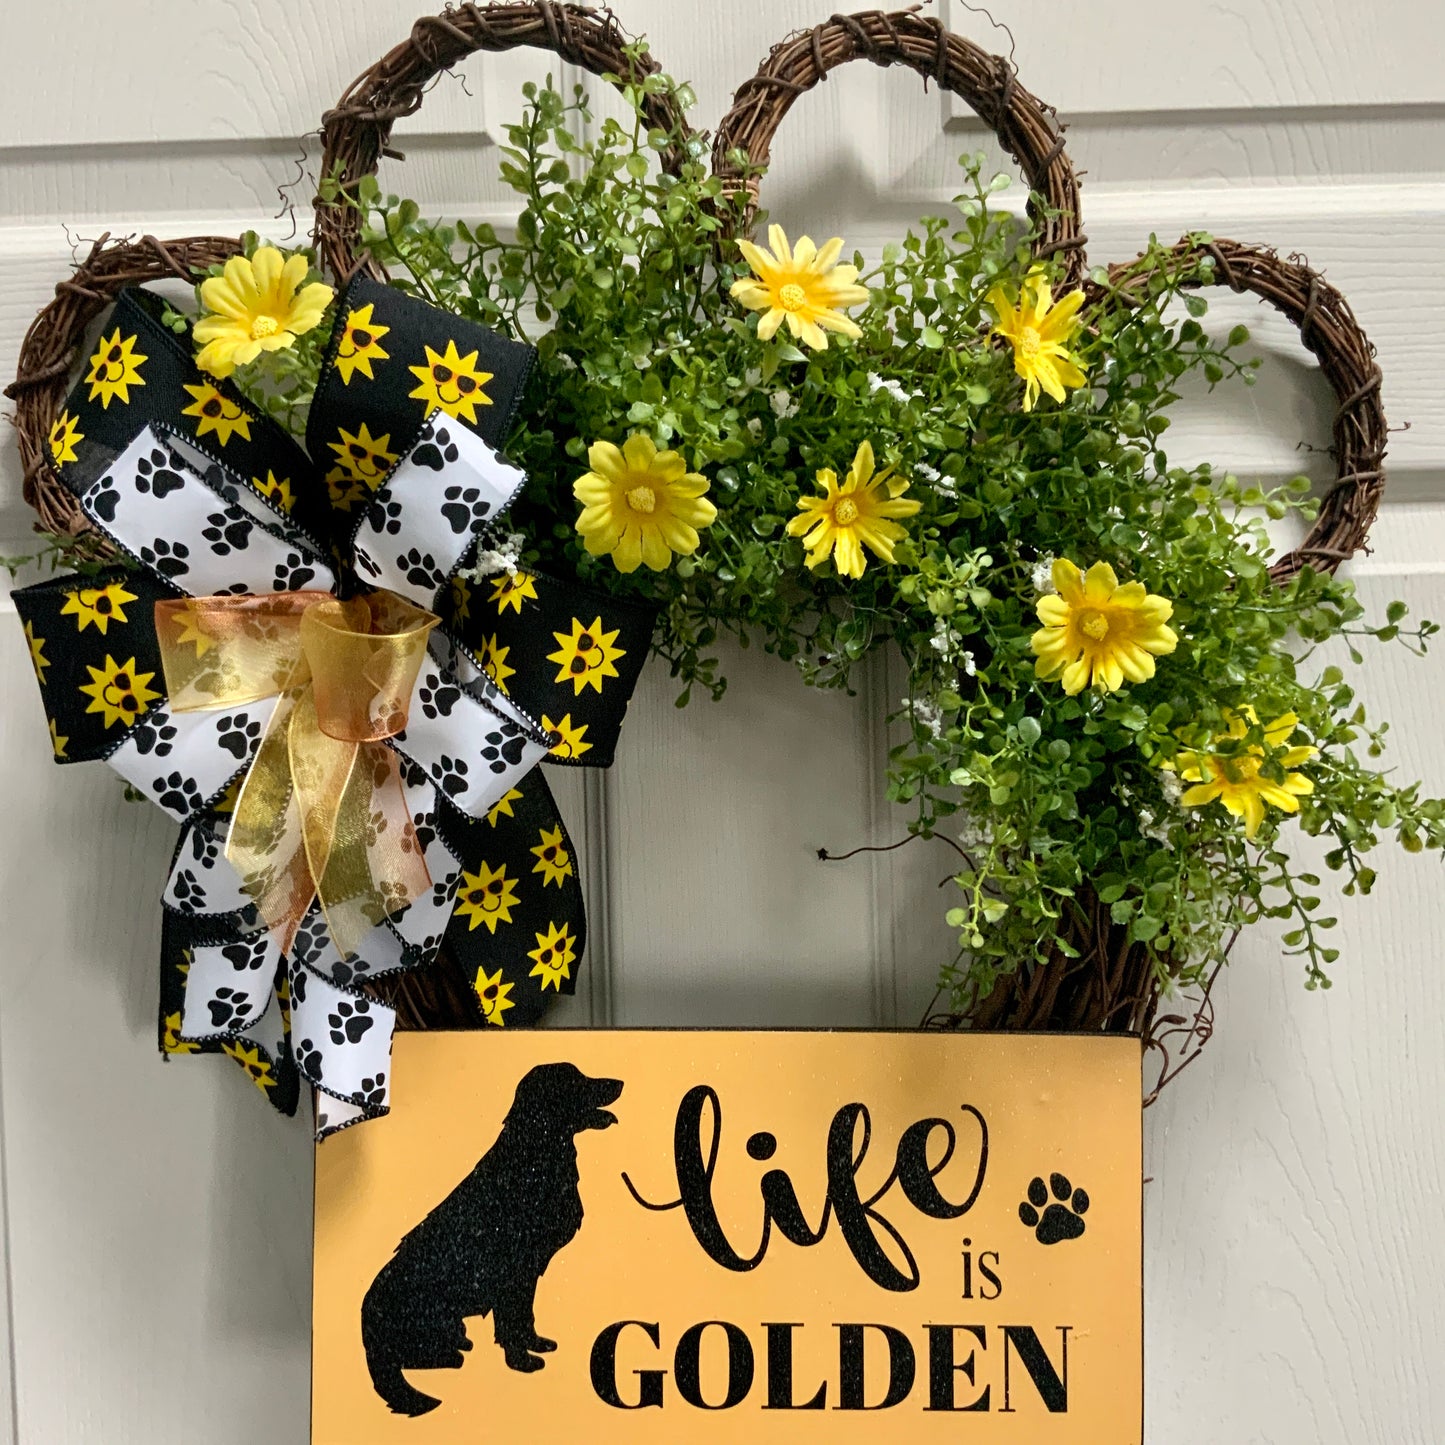 Golden Retriever Wreath, Dog Wreath, Life Is Golden Wreath, Dog Grapevine Wreath, Dog Decor, Golden Retriever Door Hanger, Dog Paw Print Wreath